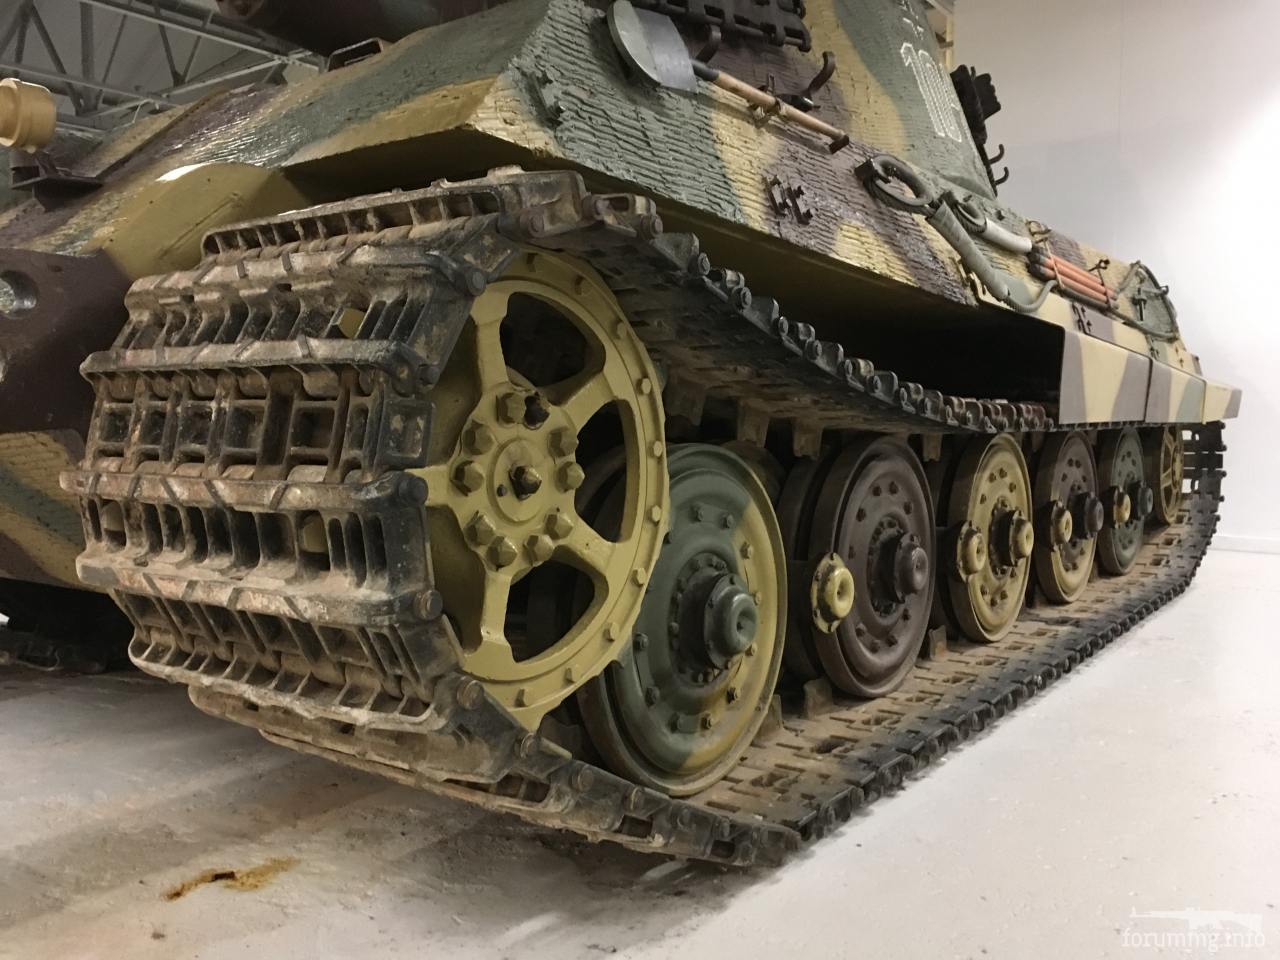 143927 - Achtung Panzer!